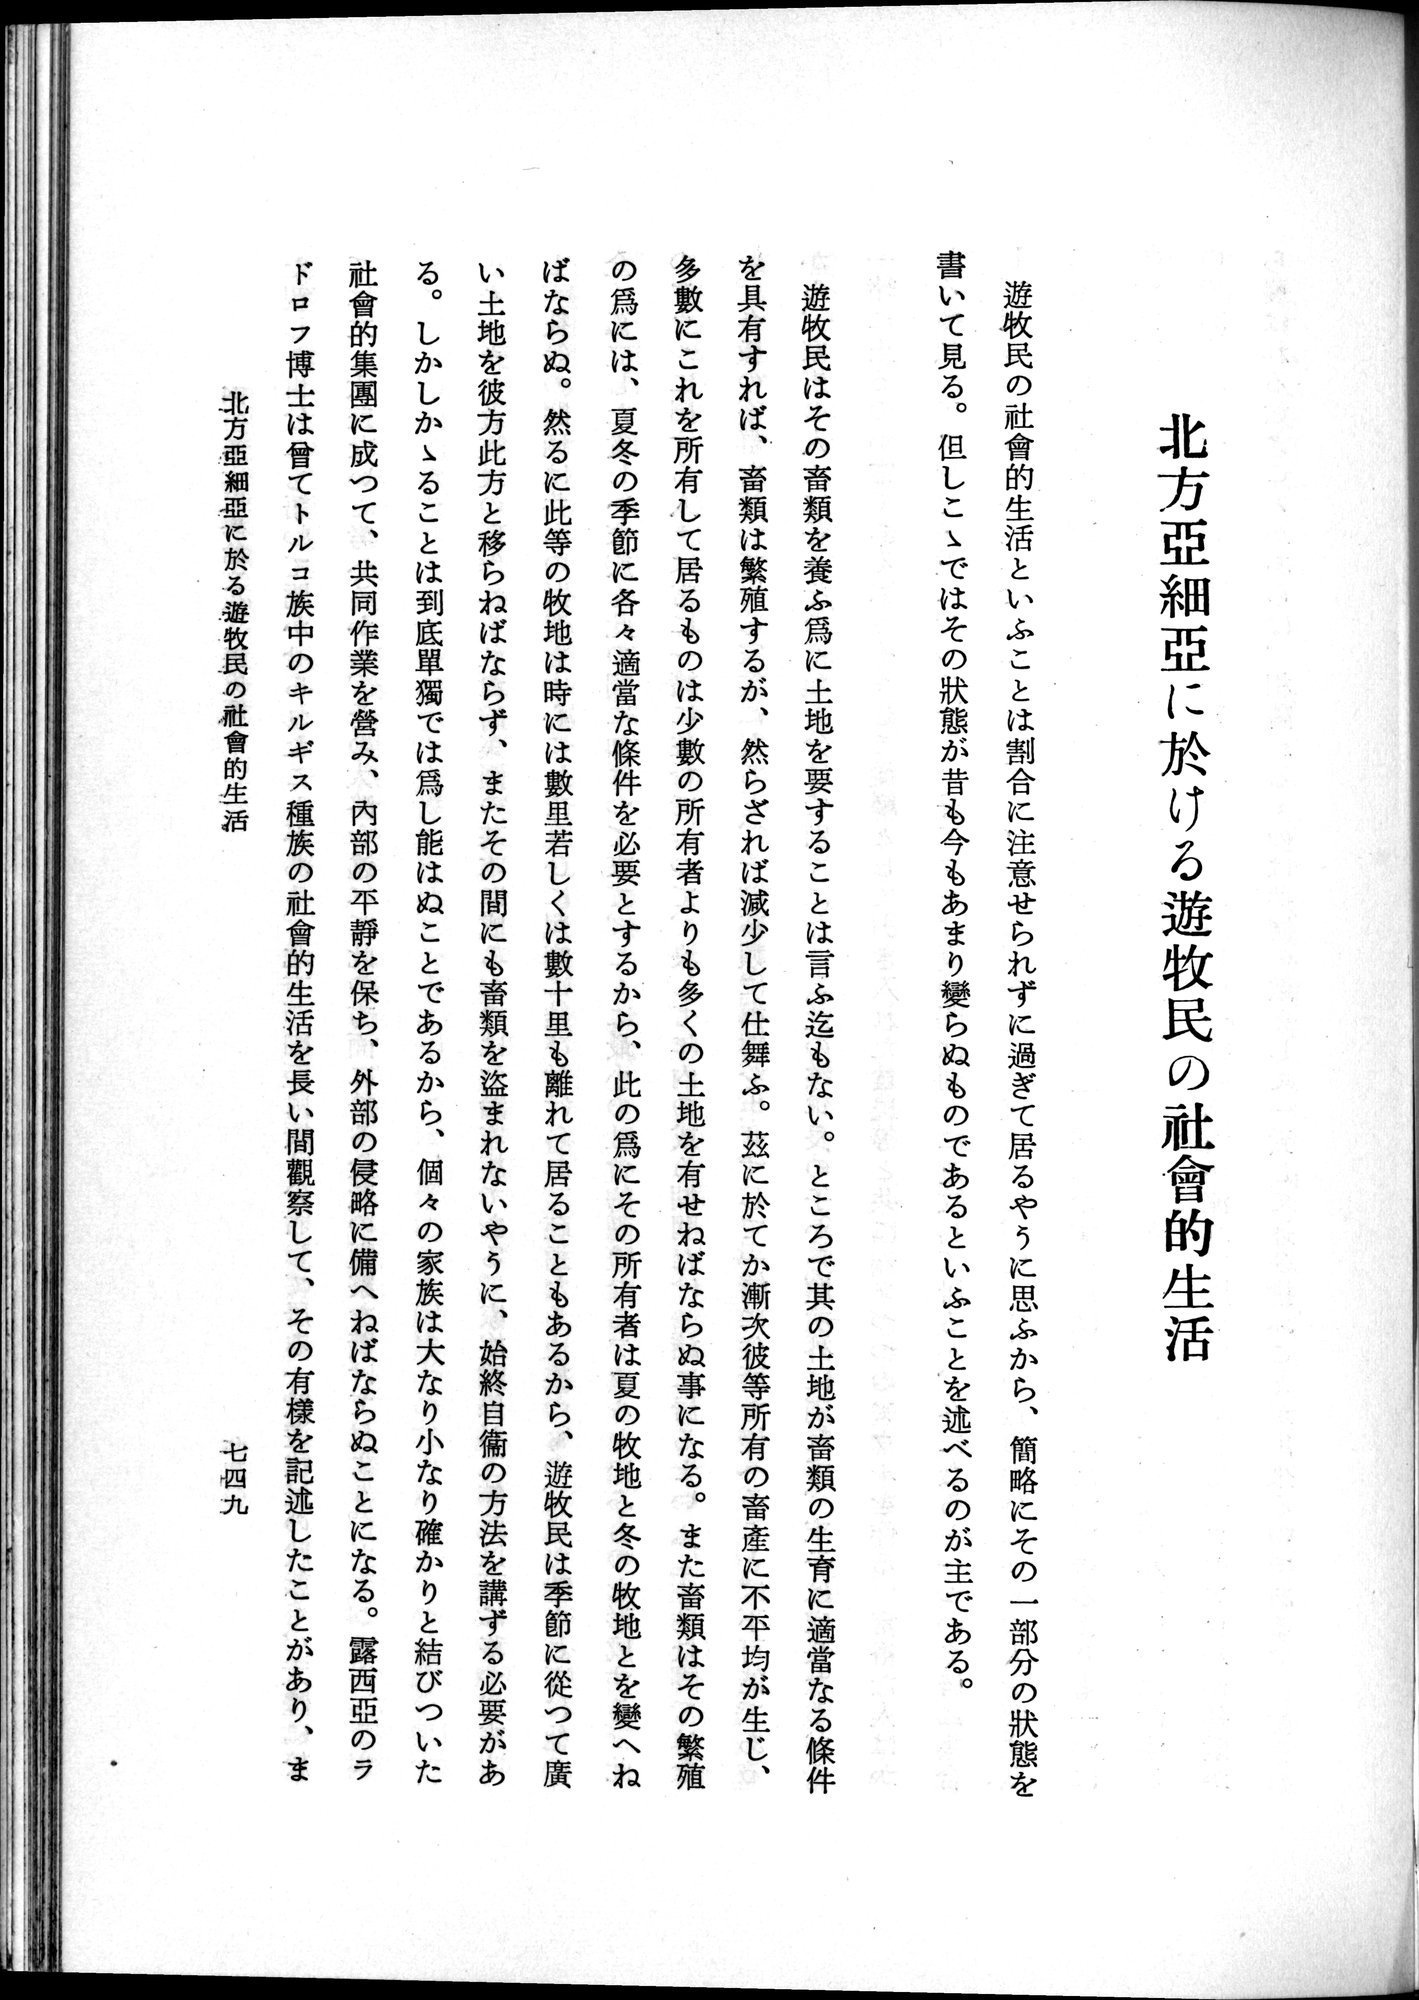 羽田博士史学論文集 : vol.1 / 787 ページ（白黒高解像度画像）